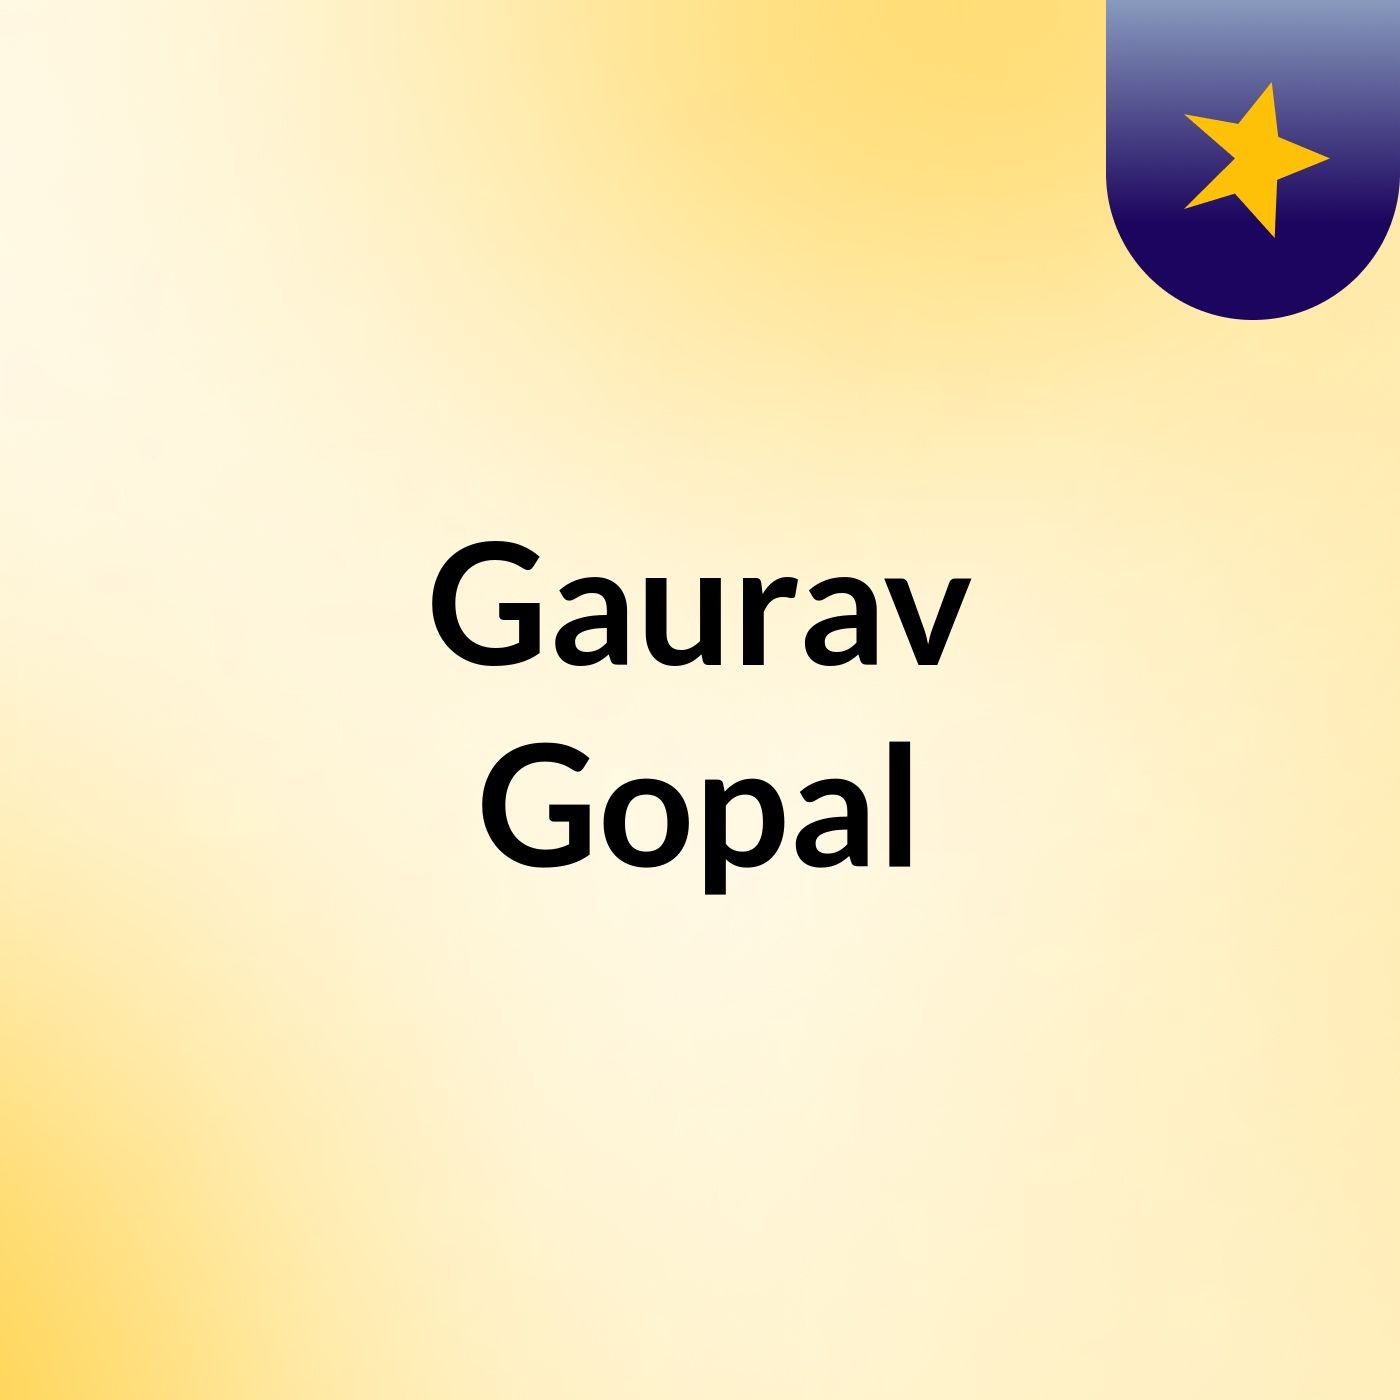 Gaurav Gopal